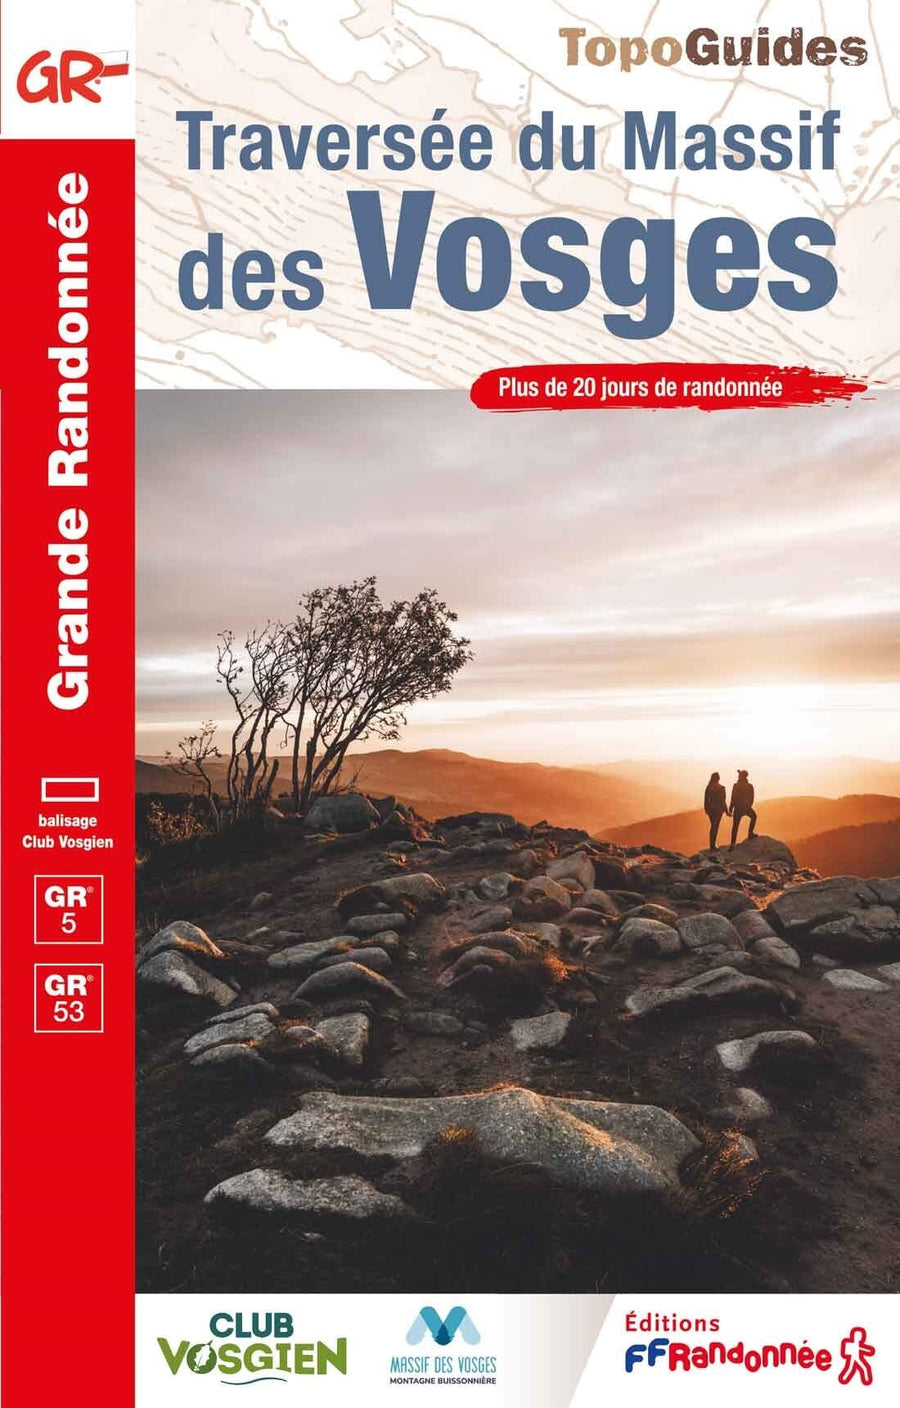 Topoguide de randonnée - Traversée du Massif des Vosges - GR5, GR53 | FFR guide de randonnée FFR - Fédération Française de Randonnée 